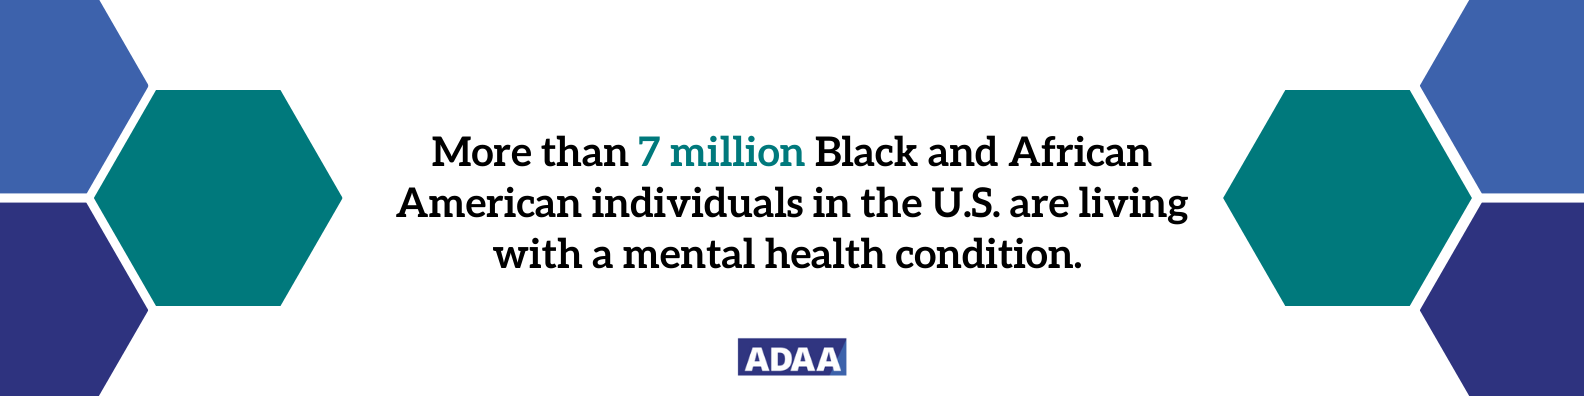 黑人和非裔美国人的心理健康状况